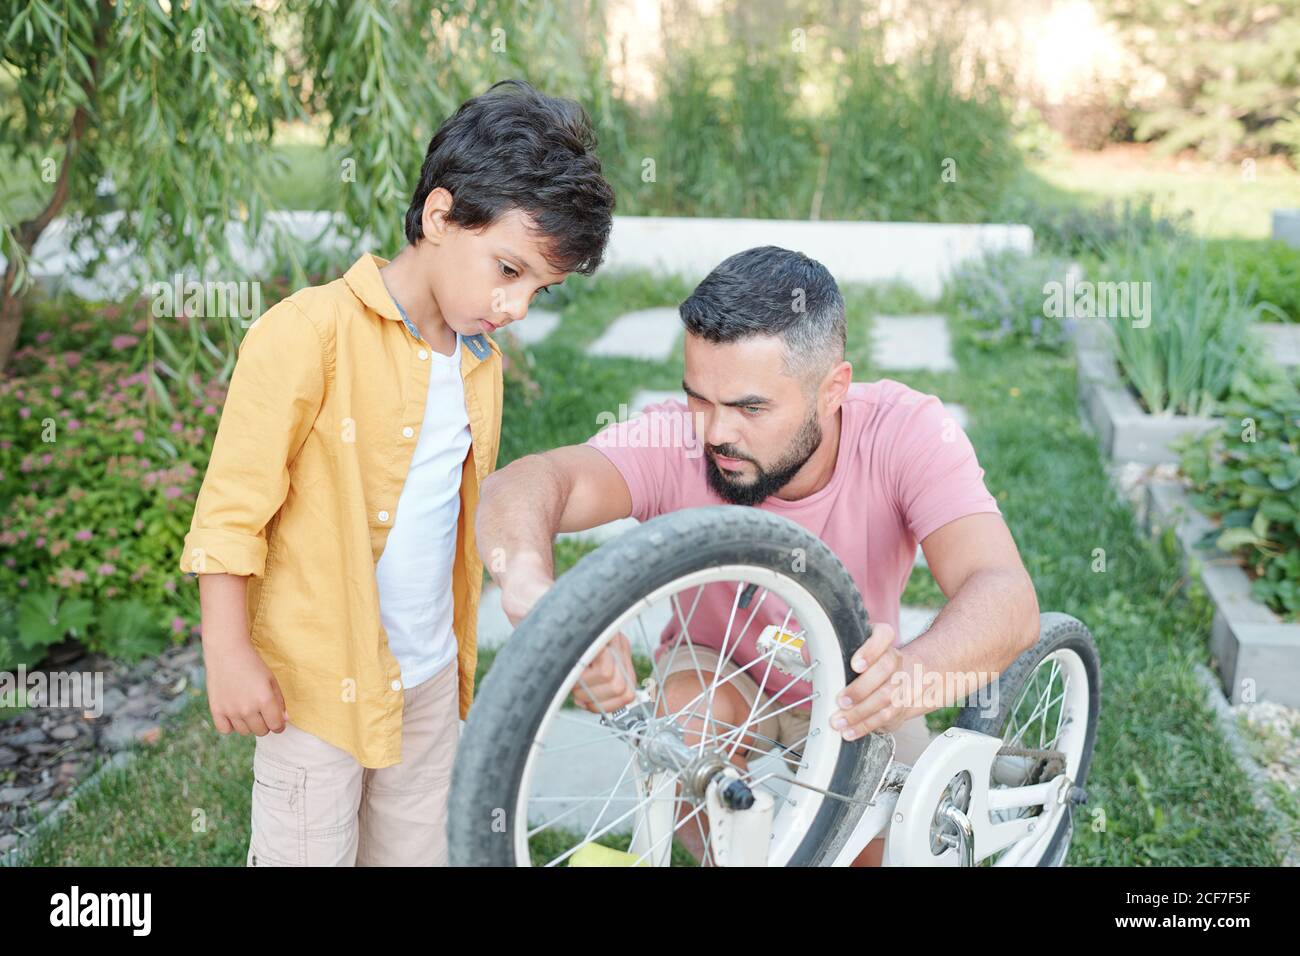 Jeune homme adulte moderne avec barbe sur le visage passant du temps à l'extérieur, aider son fils à fixer la roue de vélo Banque D'Images